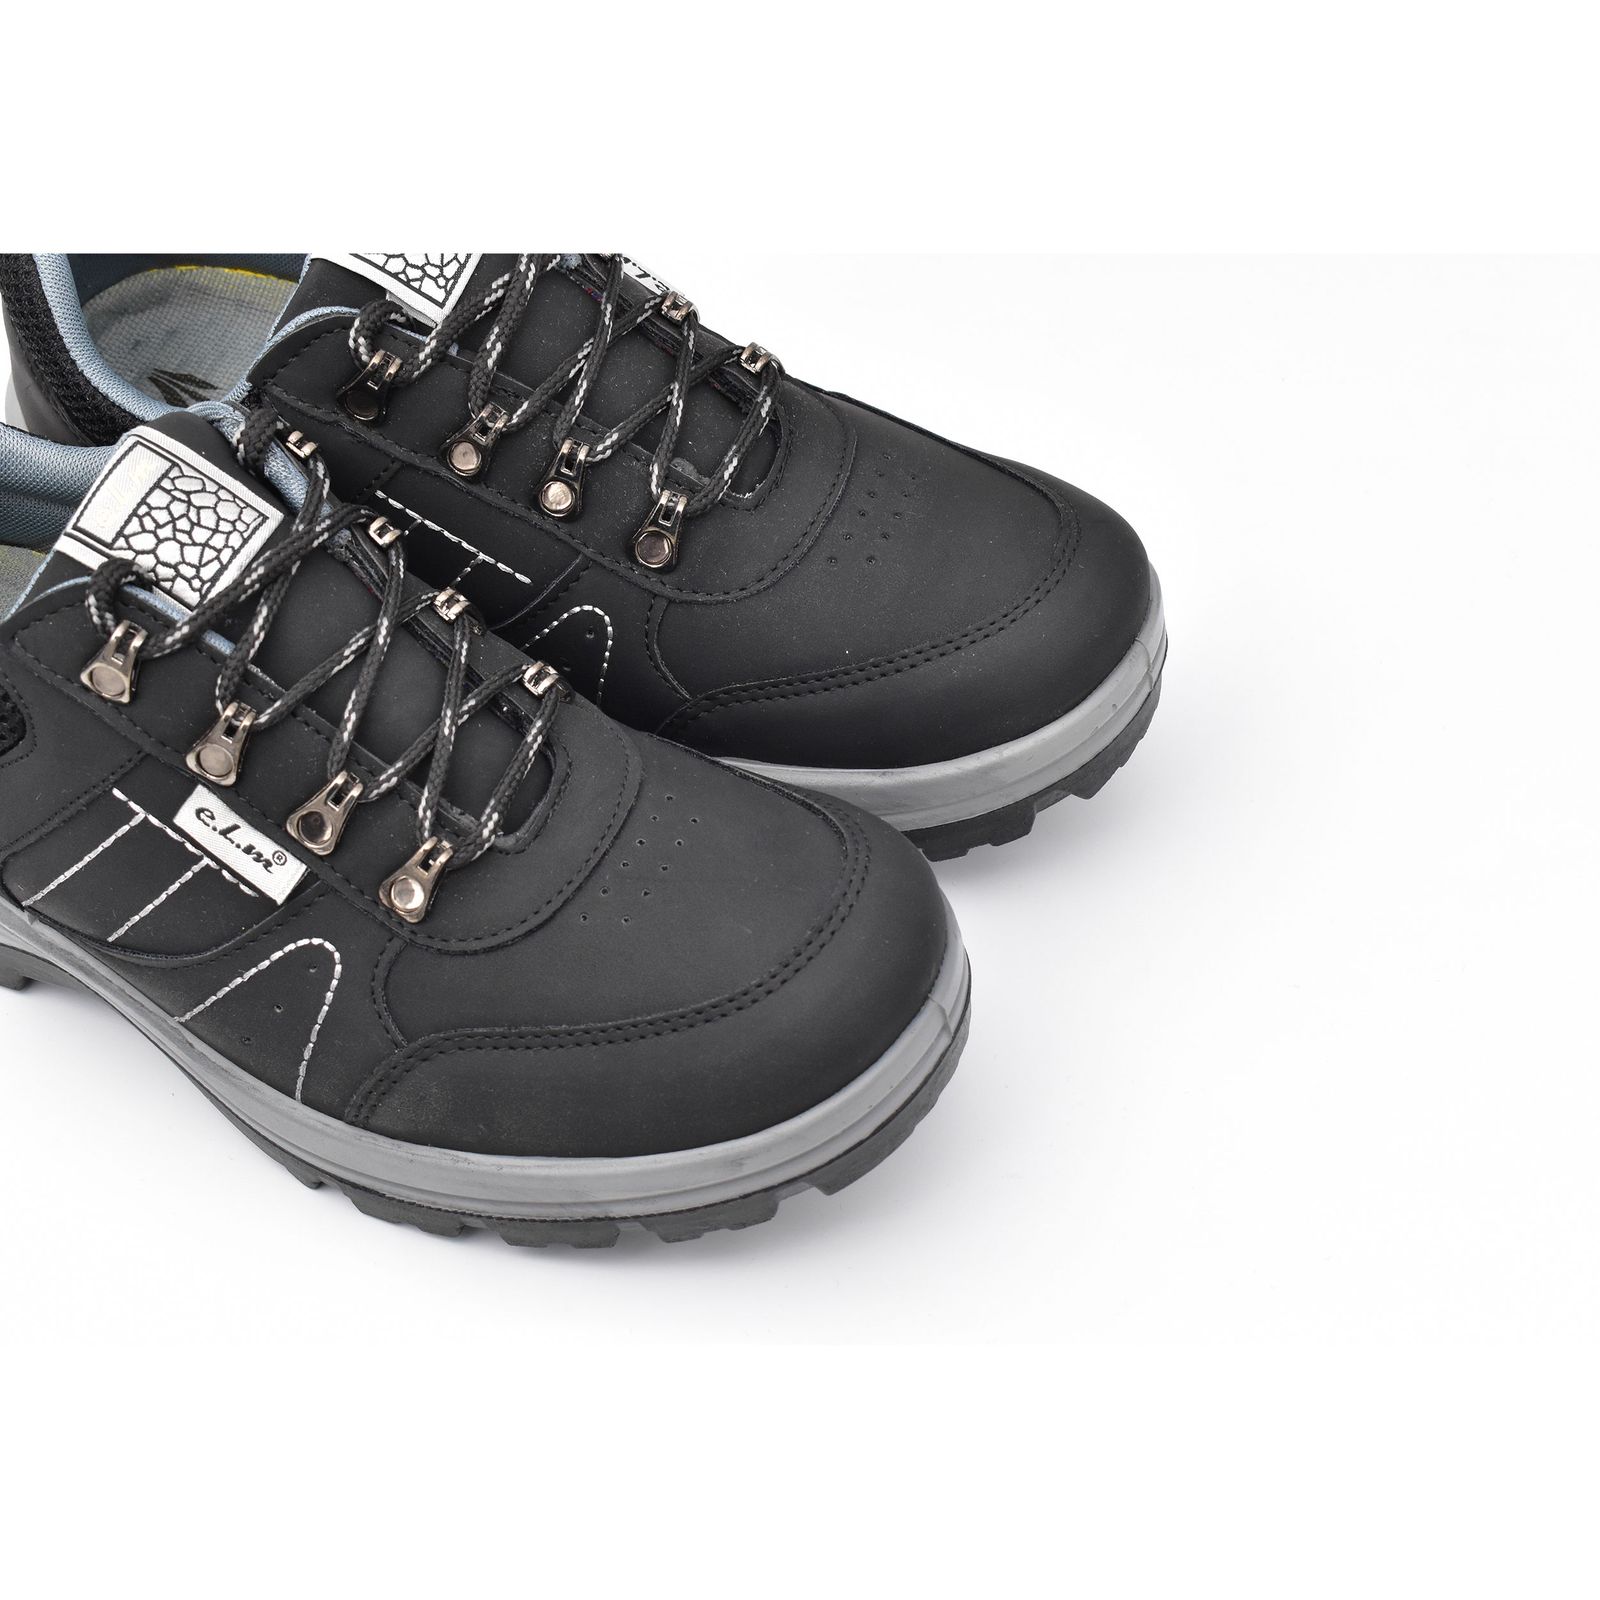 کفش پیاده روی مردانه ای ال ام مدل ماکان کد 7983 -  - 5